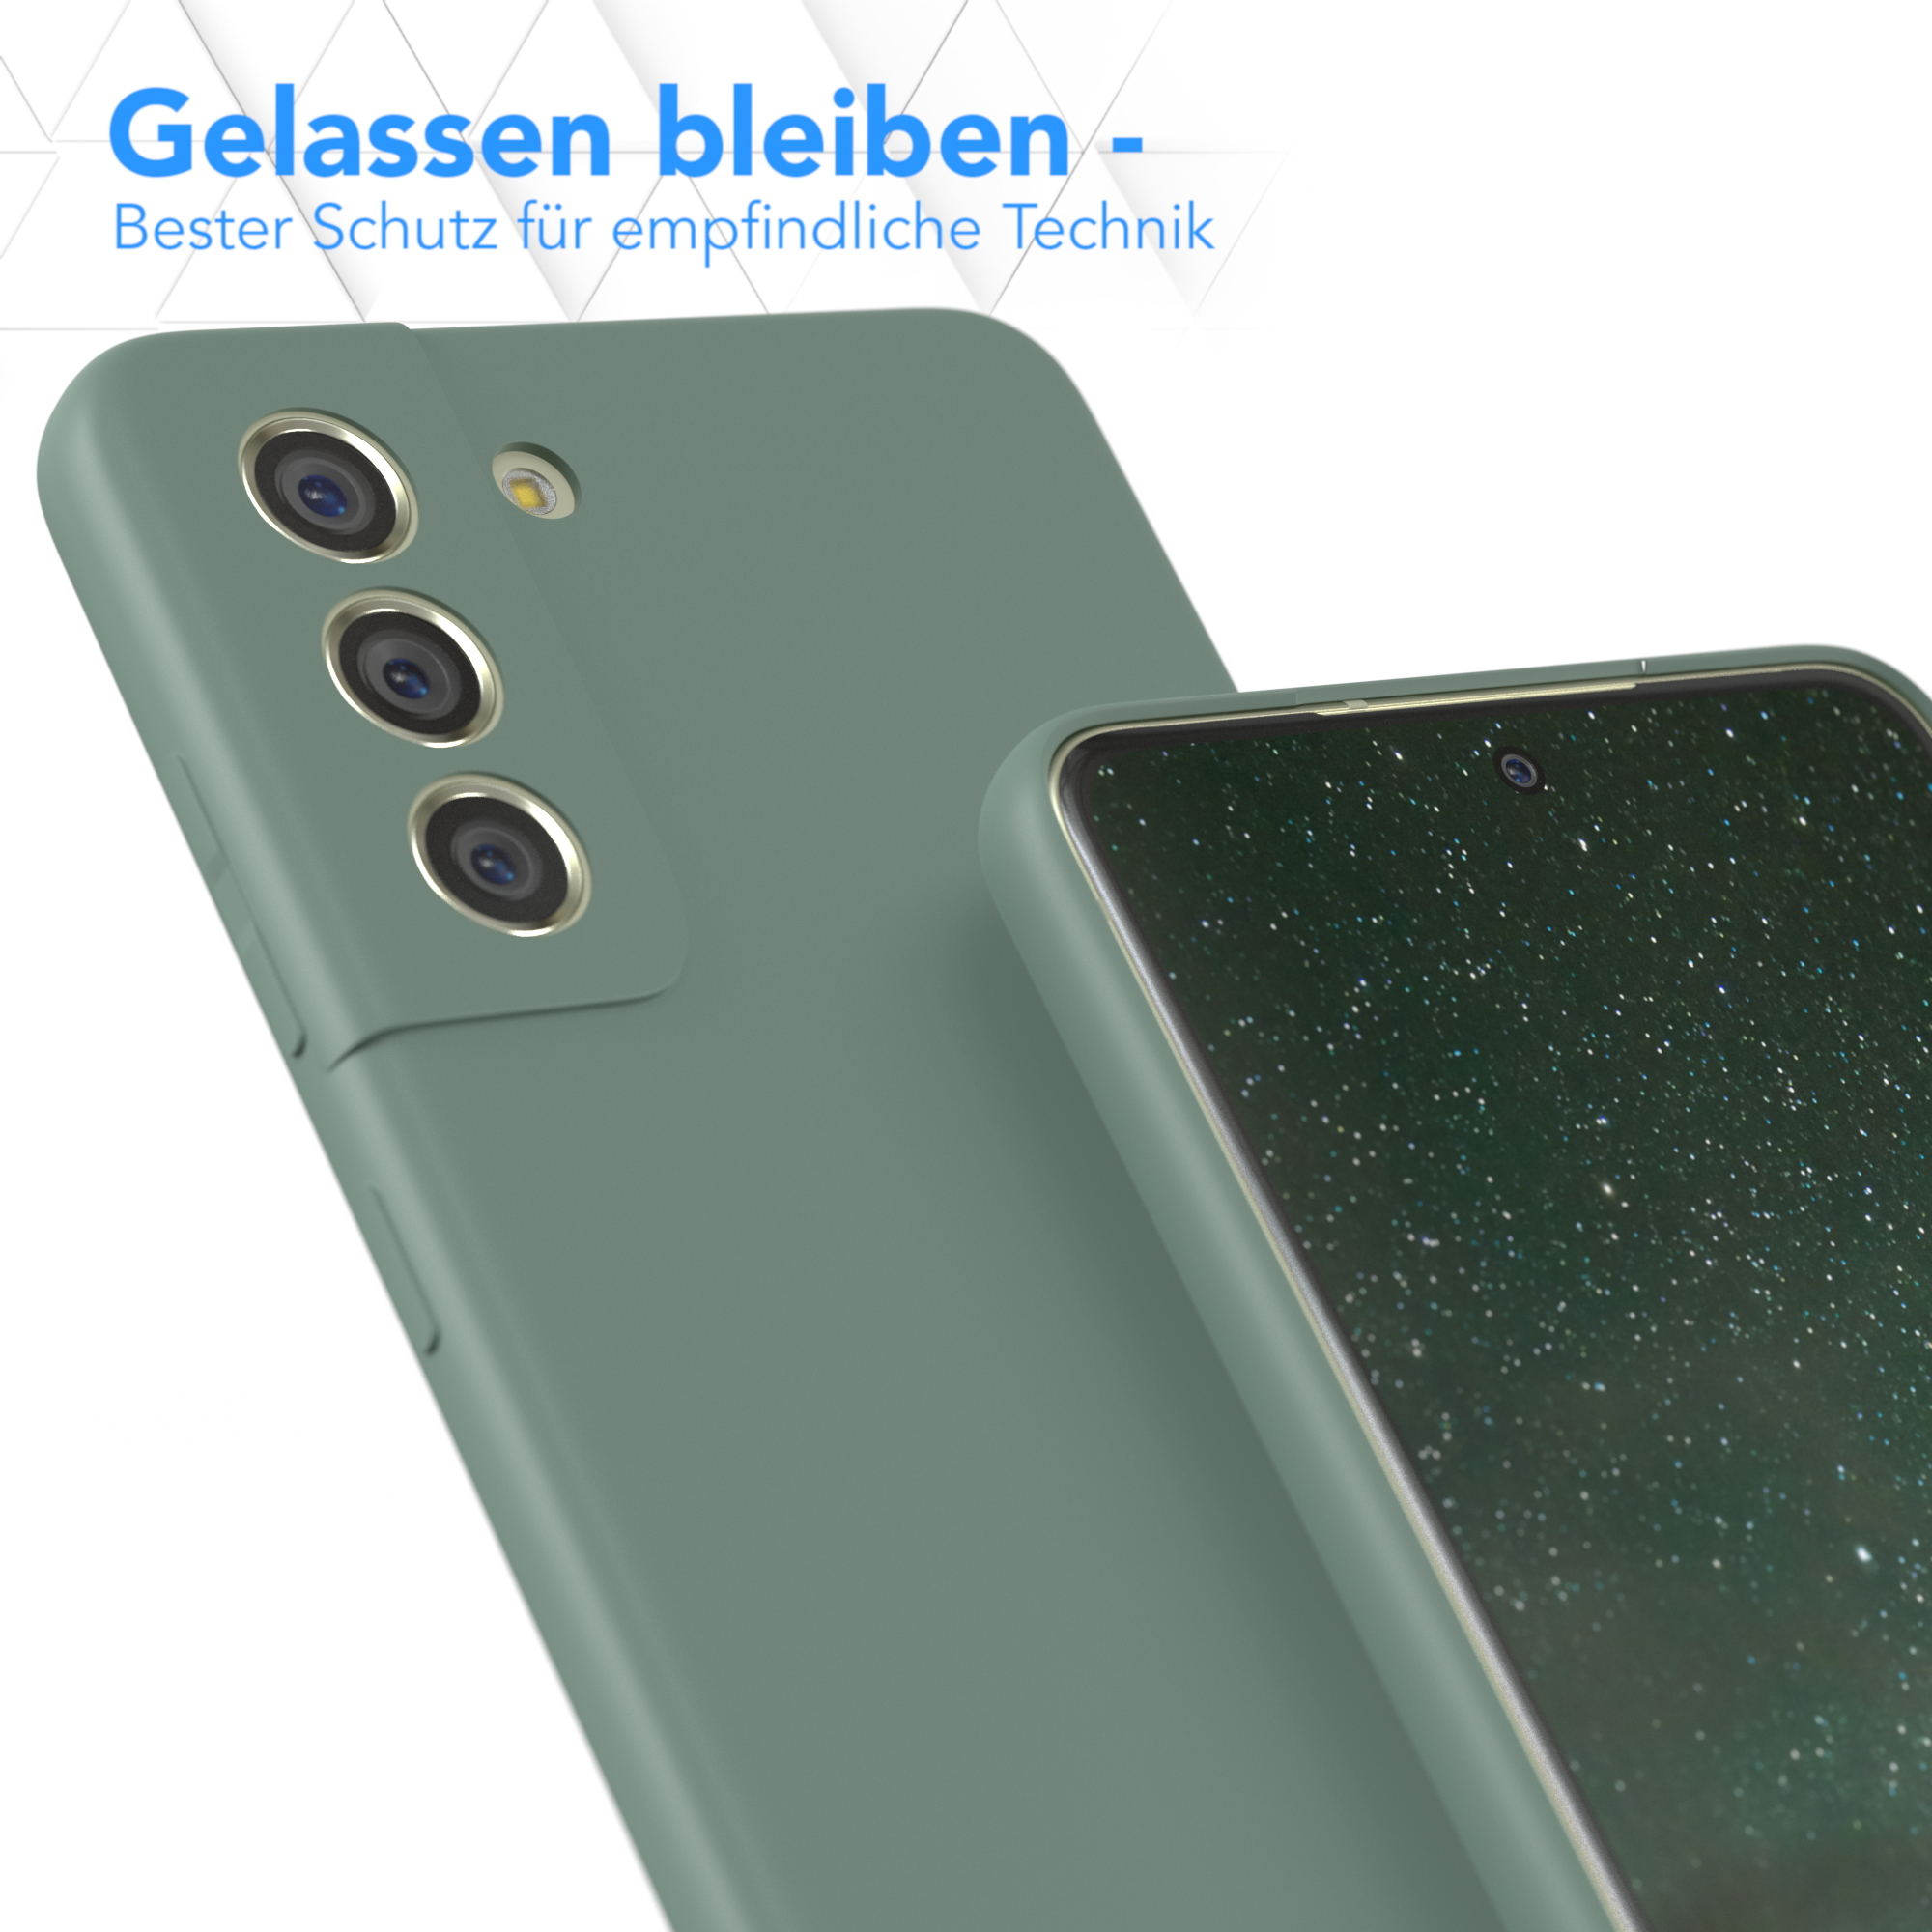 CASE EAZY S21 Galaxy Samsung, Silikon Backcover, Dunkelgrün 5G, FE Matt, TPU Handycase